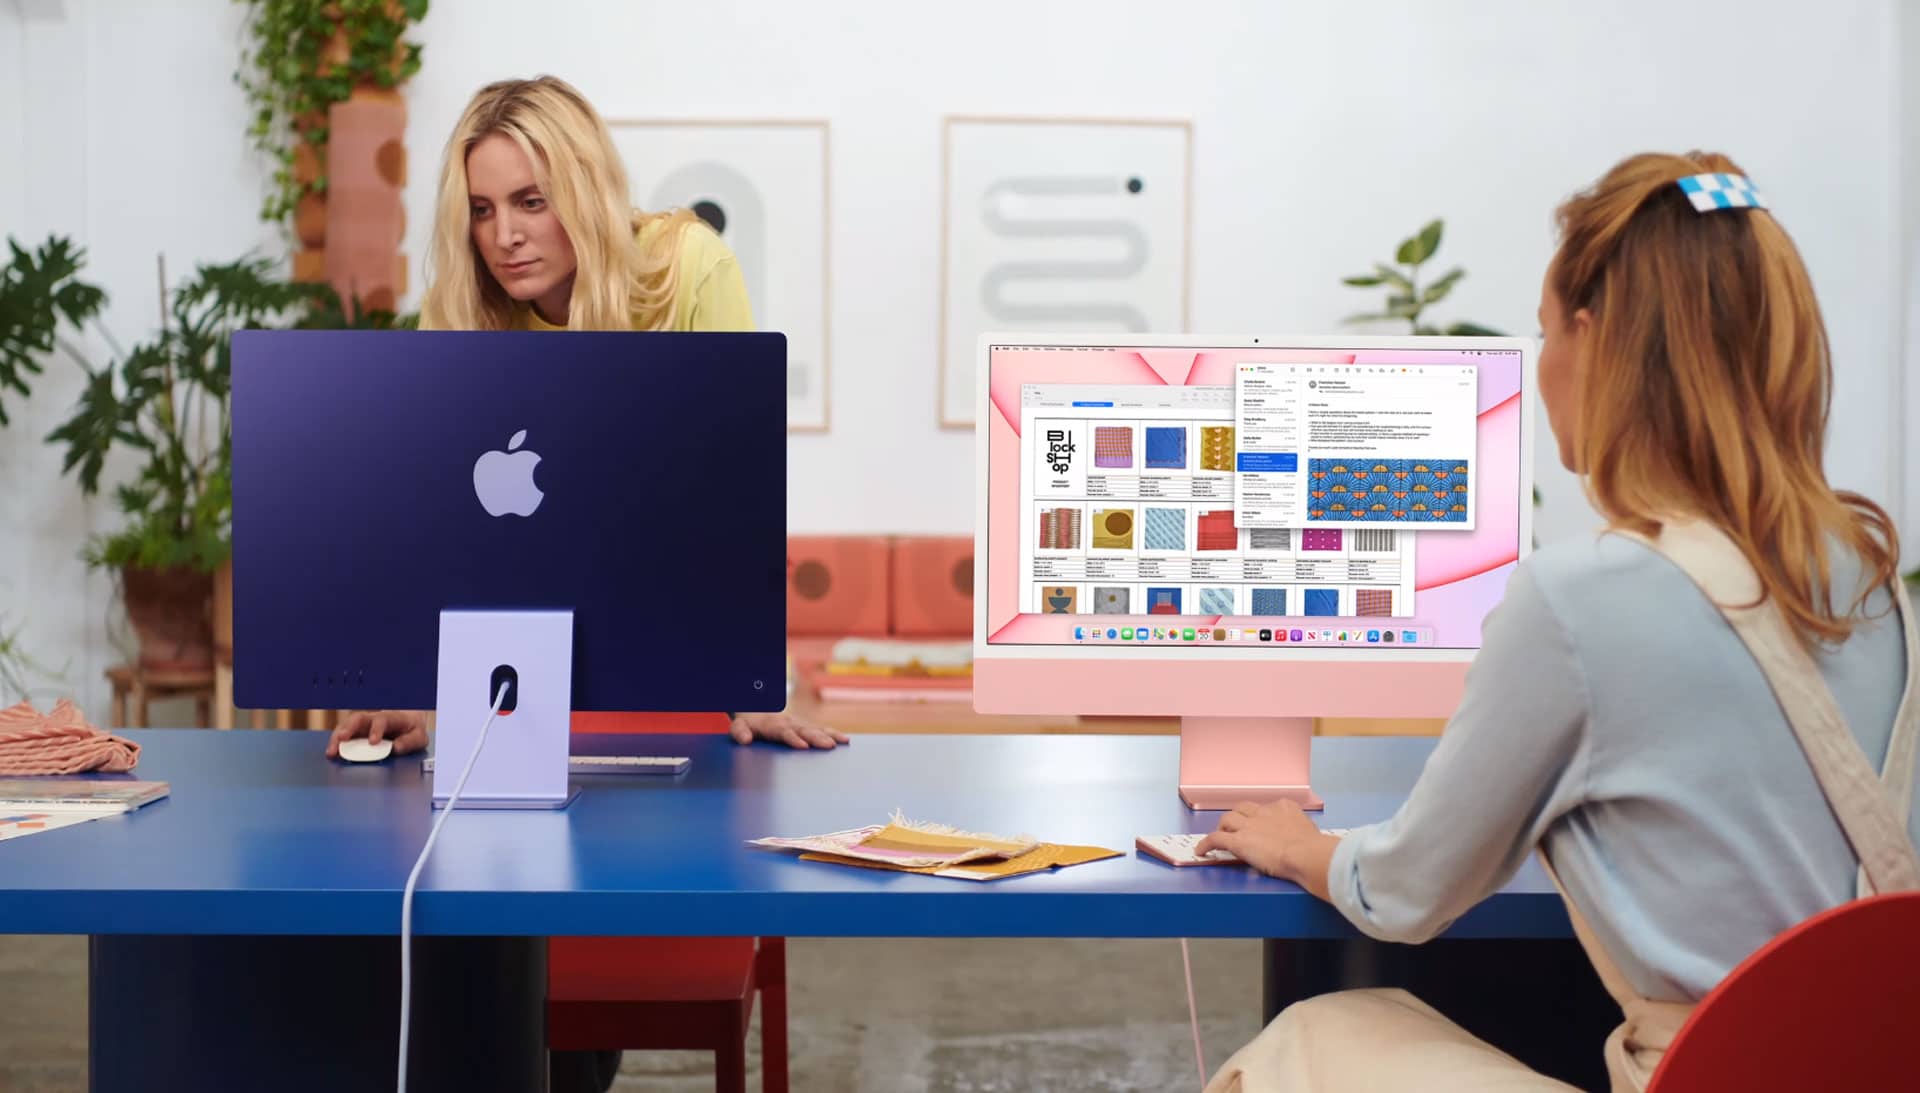 多彩 iMac 和 iPad Pro 同步發售 | 蘋果春季發布會回顧-gadget-Apple